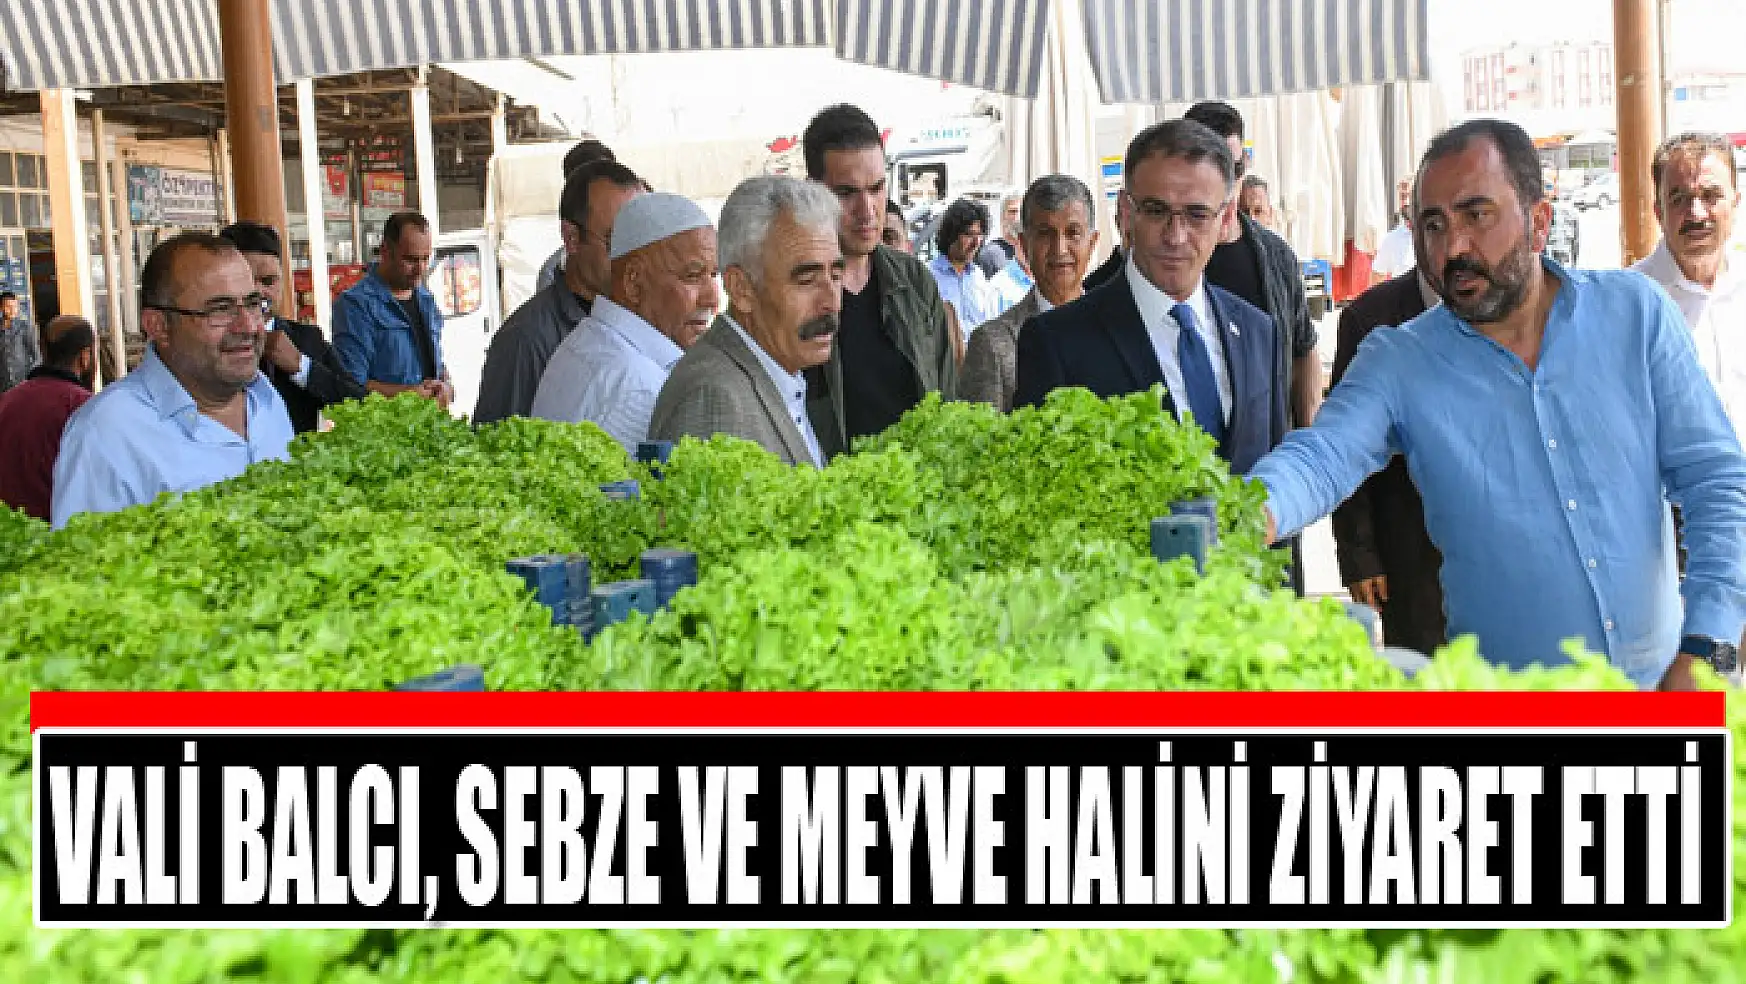 Vali Balcı, sebze ve meyve halini ziyaret etti